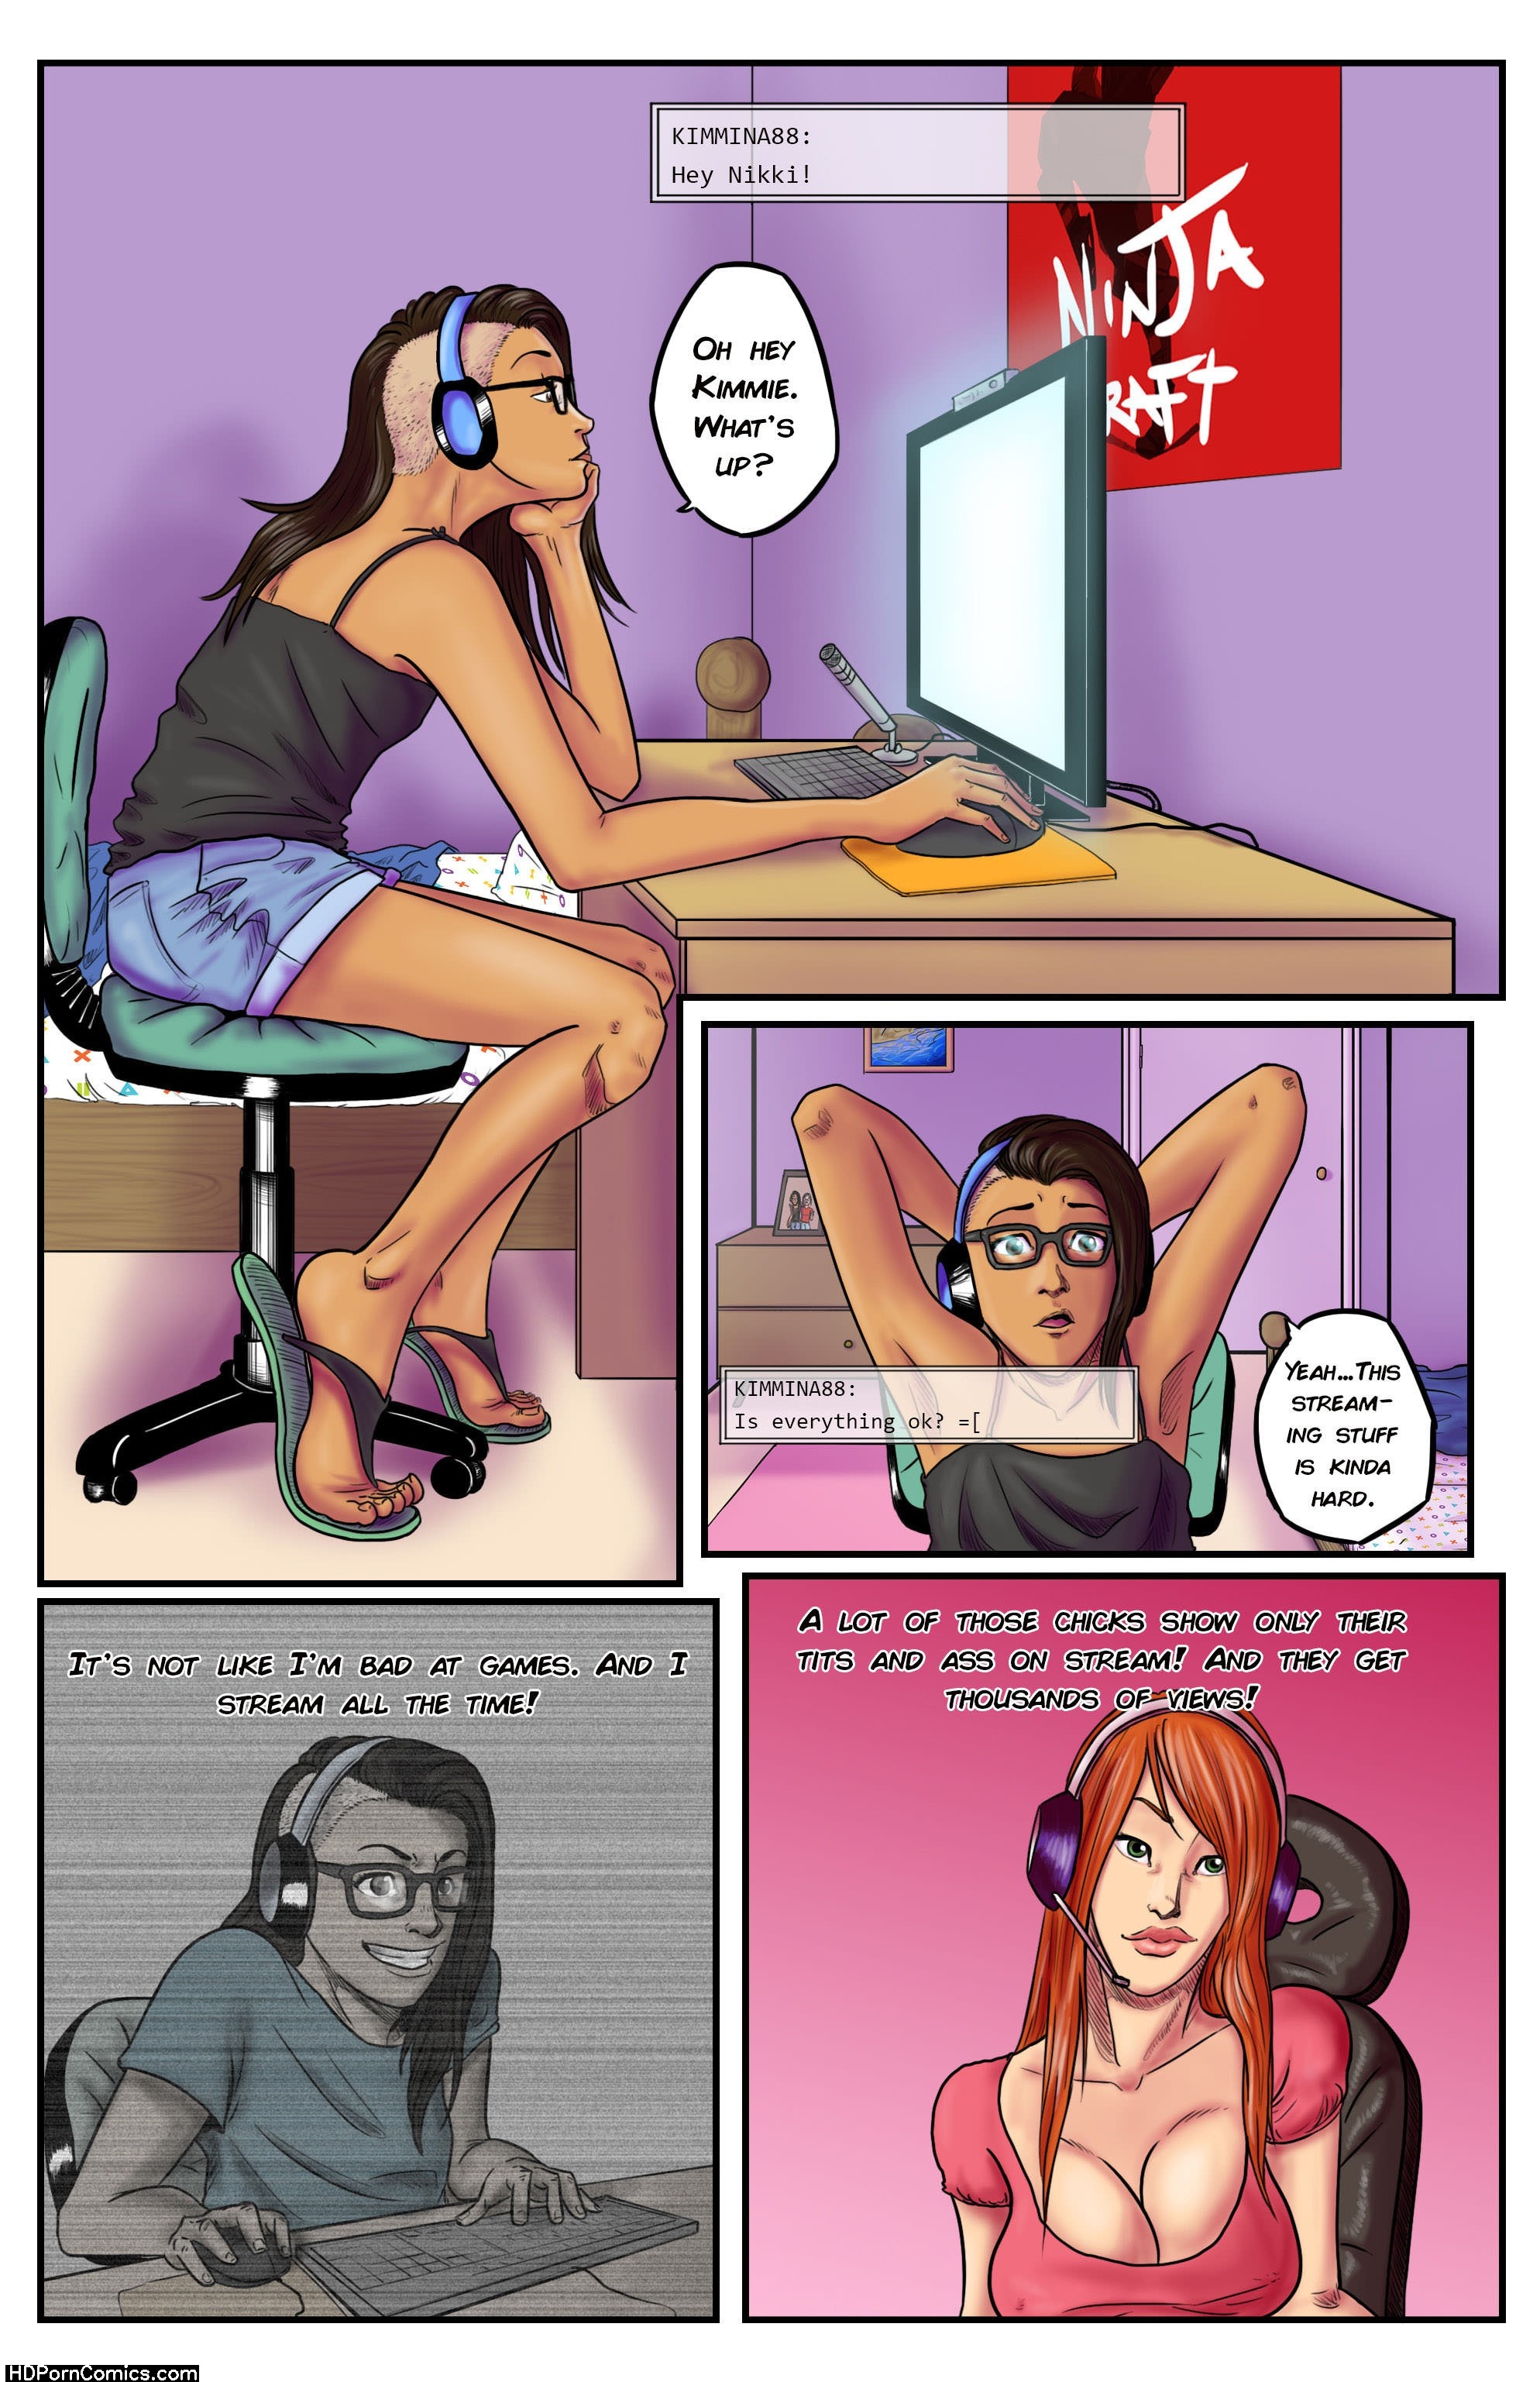 Computer Cartoon Porn - Famous Cartoon Porn Comics | Sex Pictures Pass